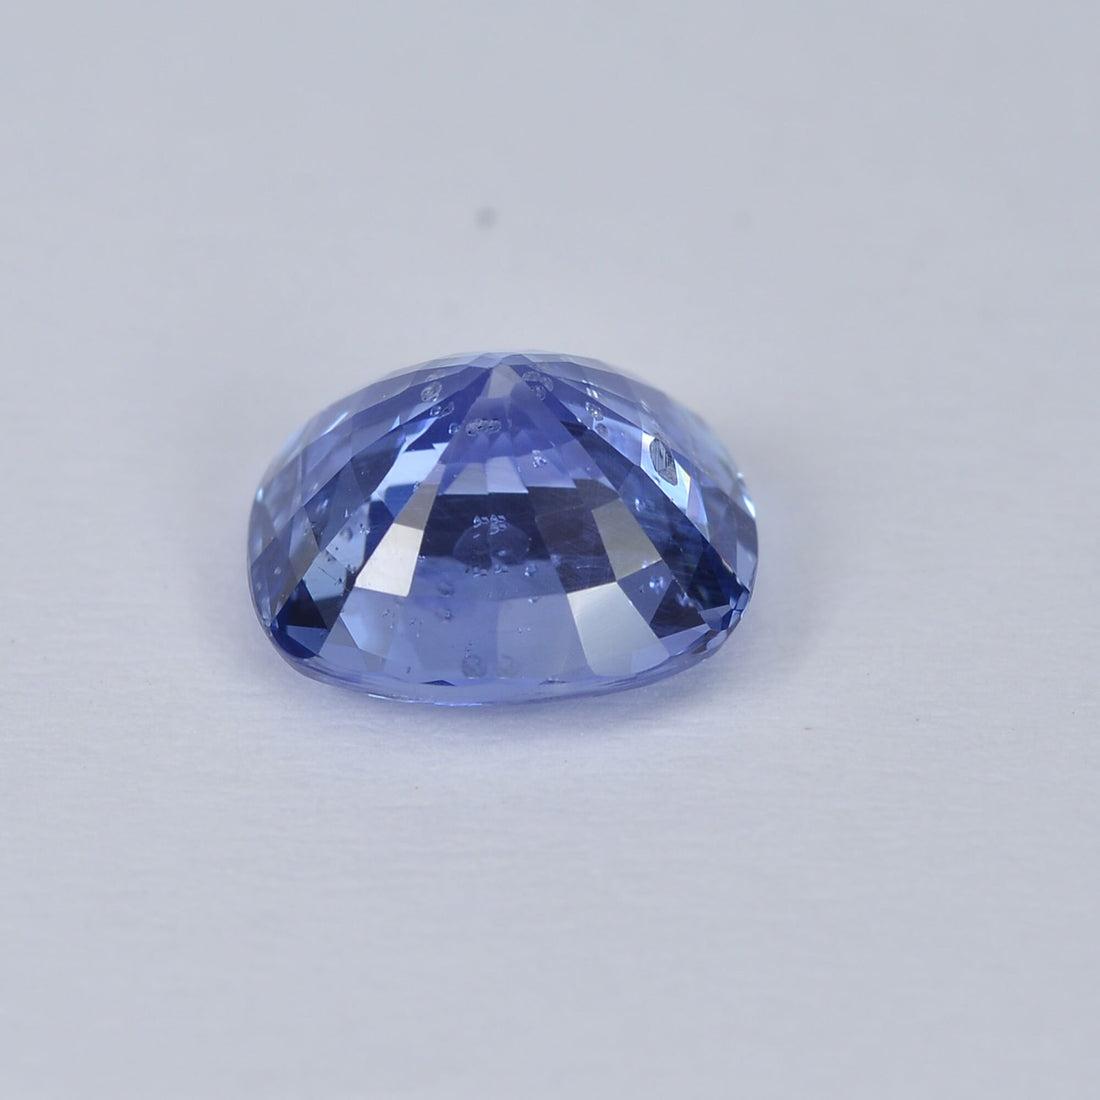 2.04 cts Natural Blue Sapphire Loose Gemstone Cushion Cut